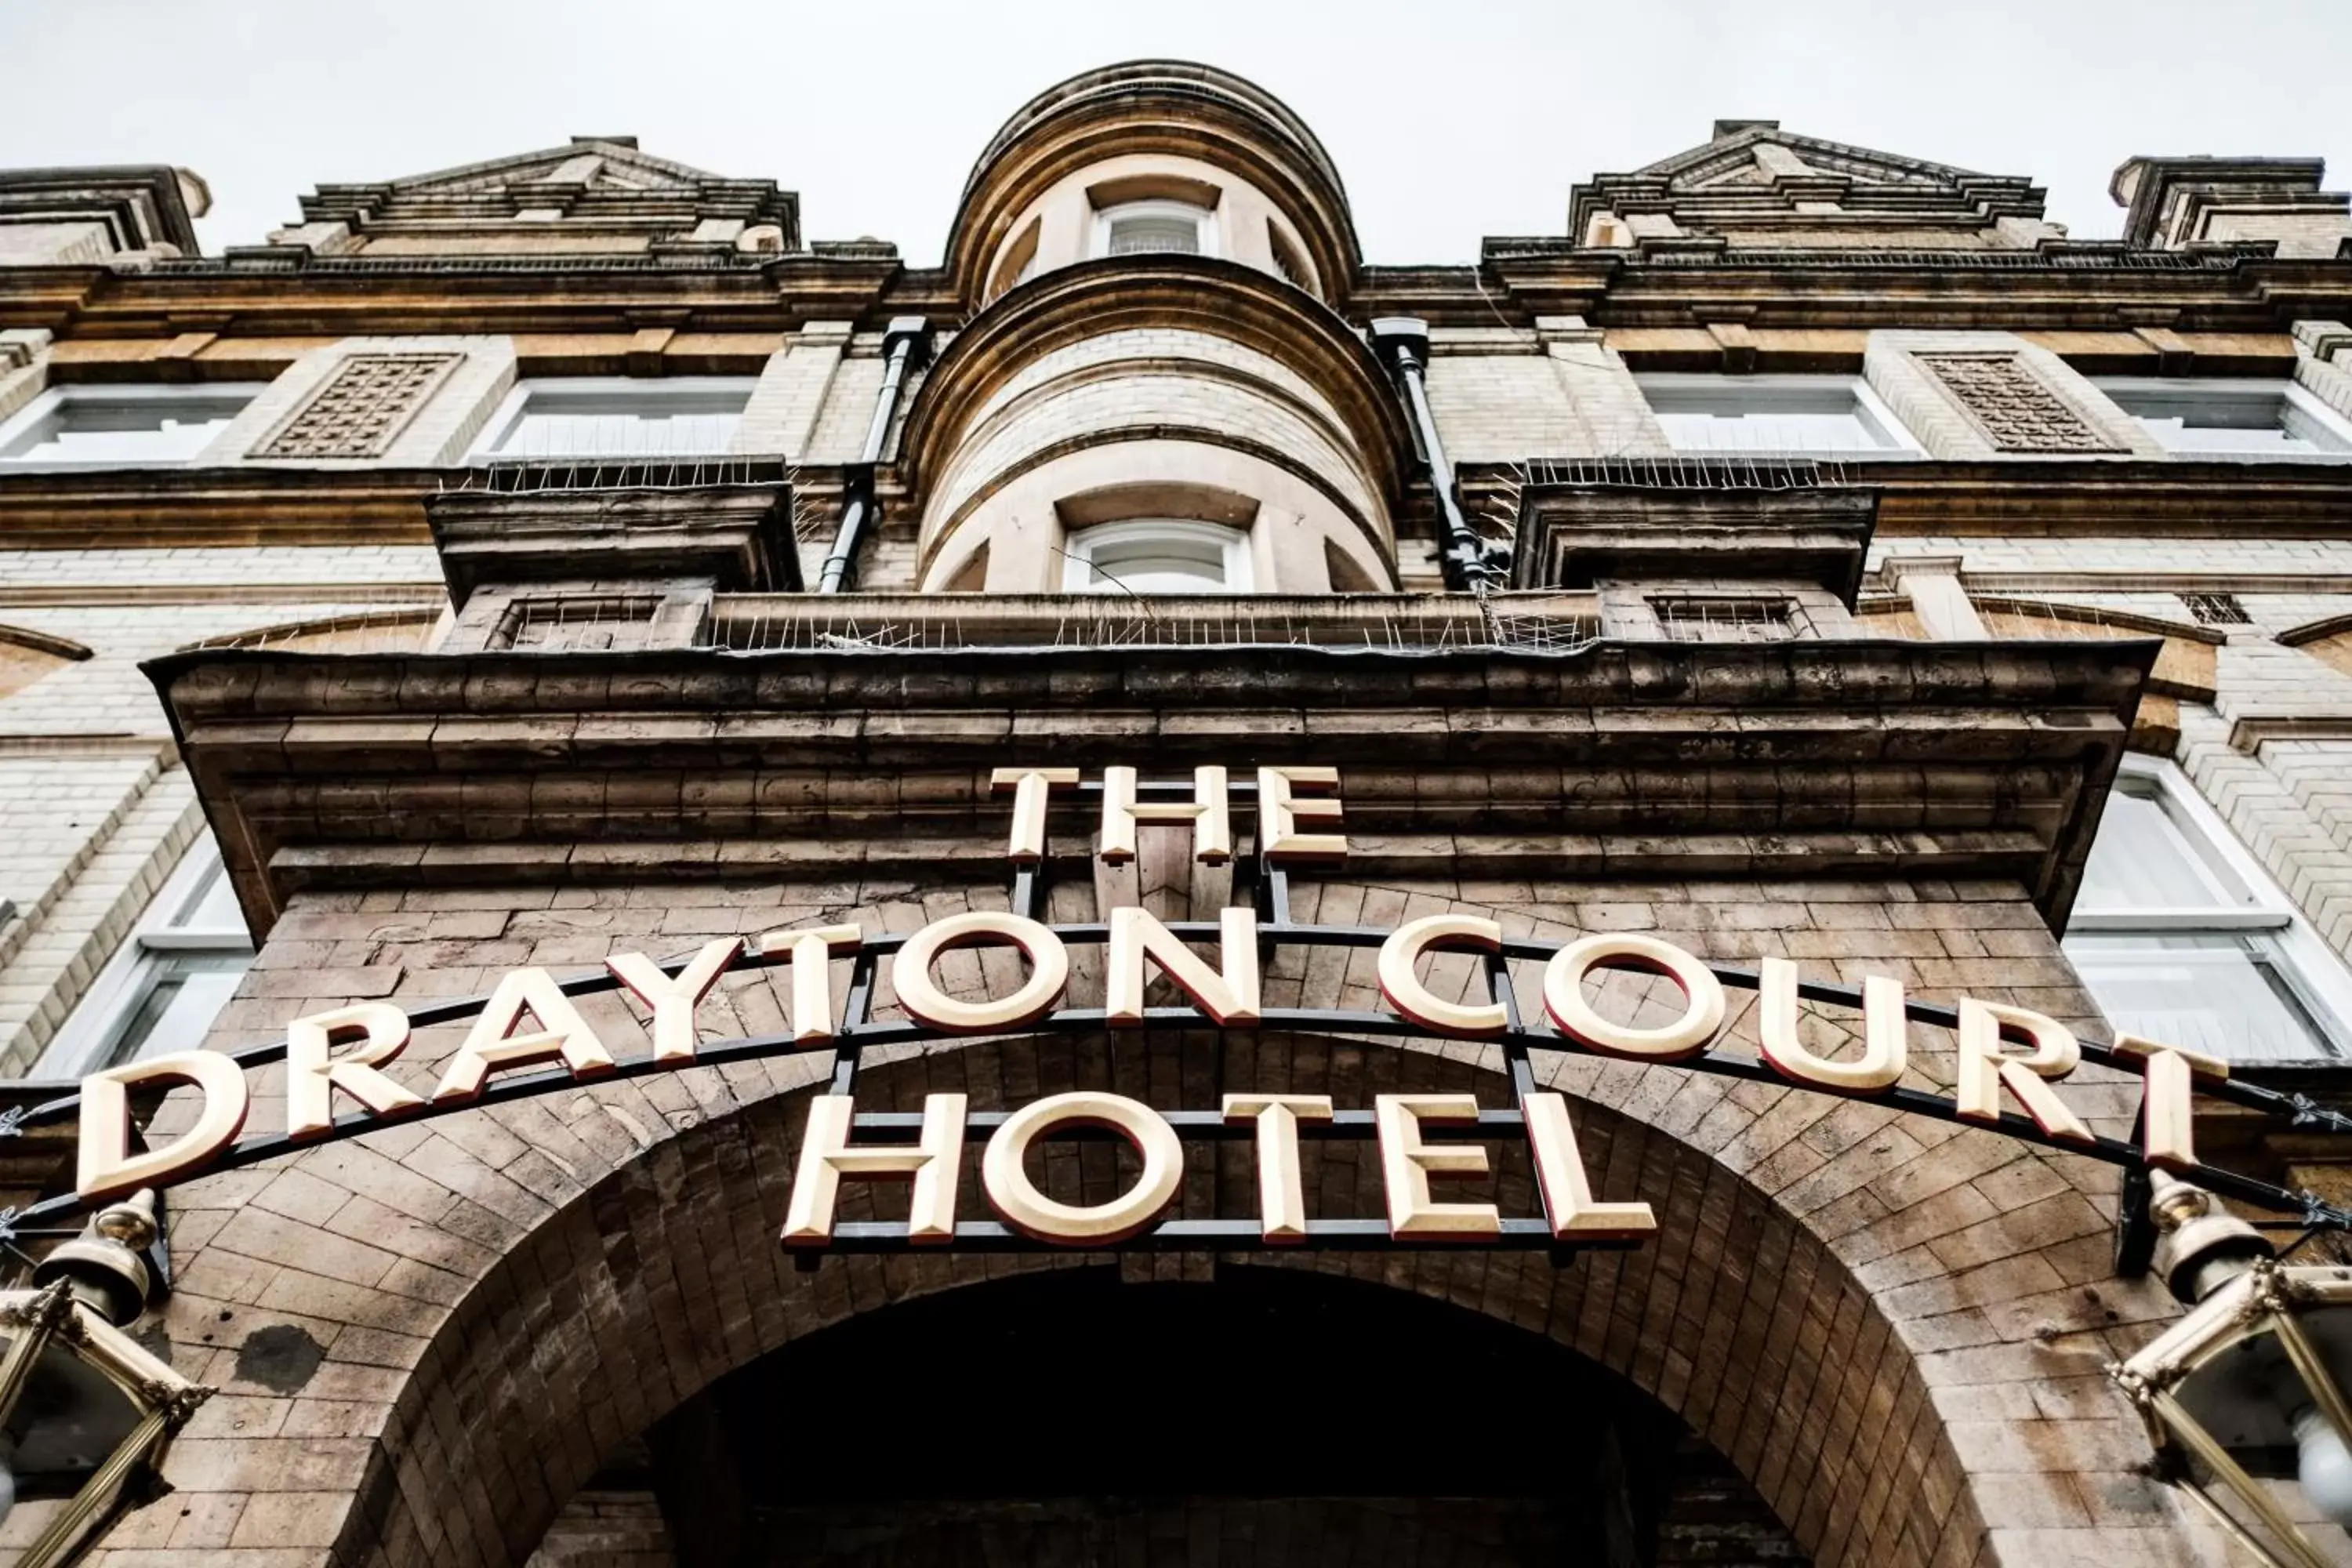 Facade/entrance in The Drayton Court Hotel